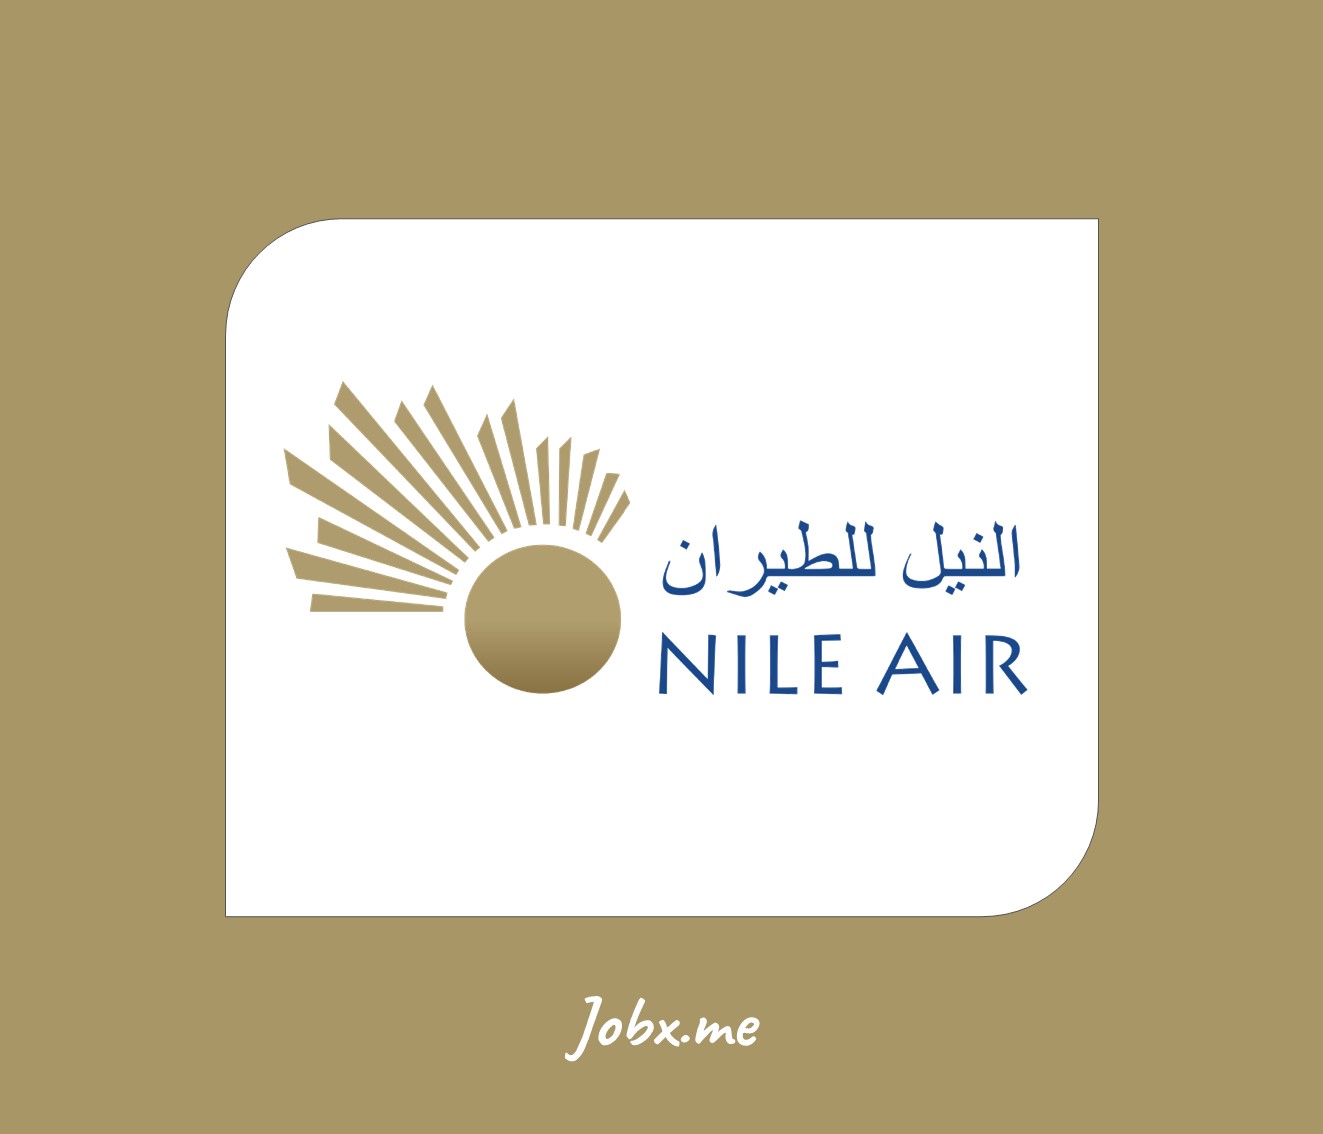 Nile Air Jobs